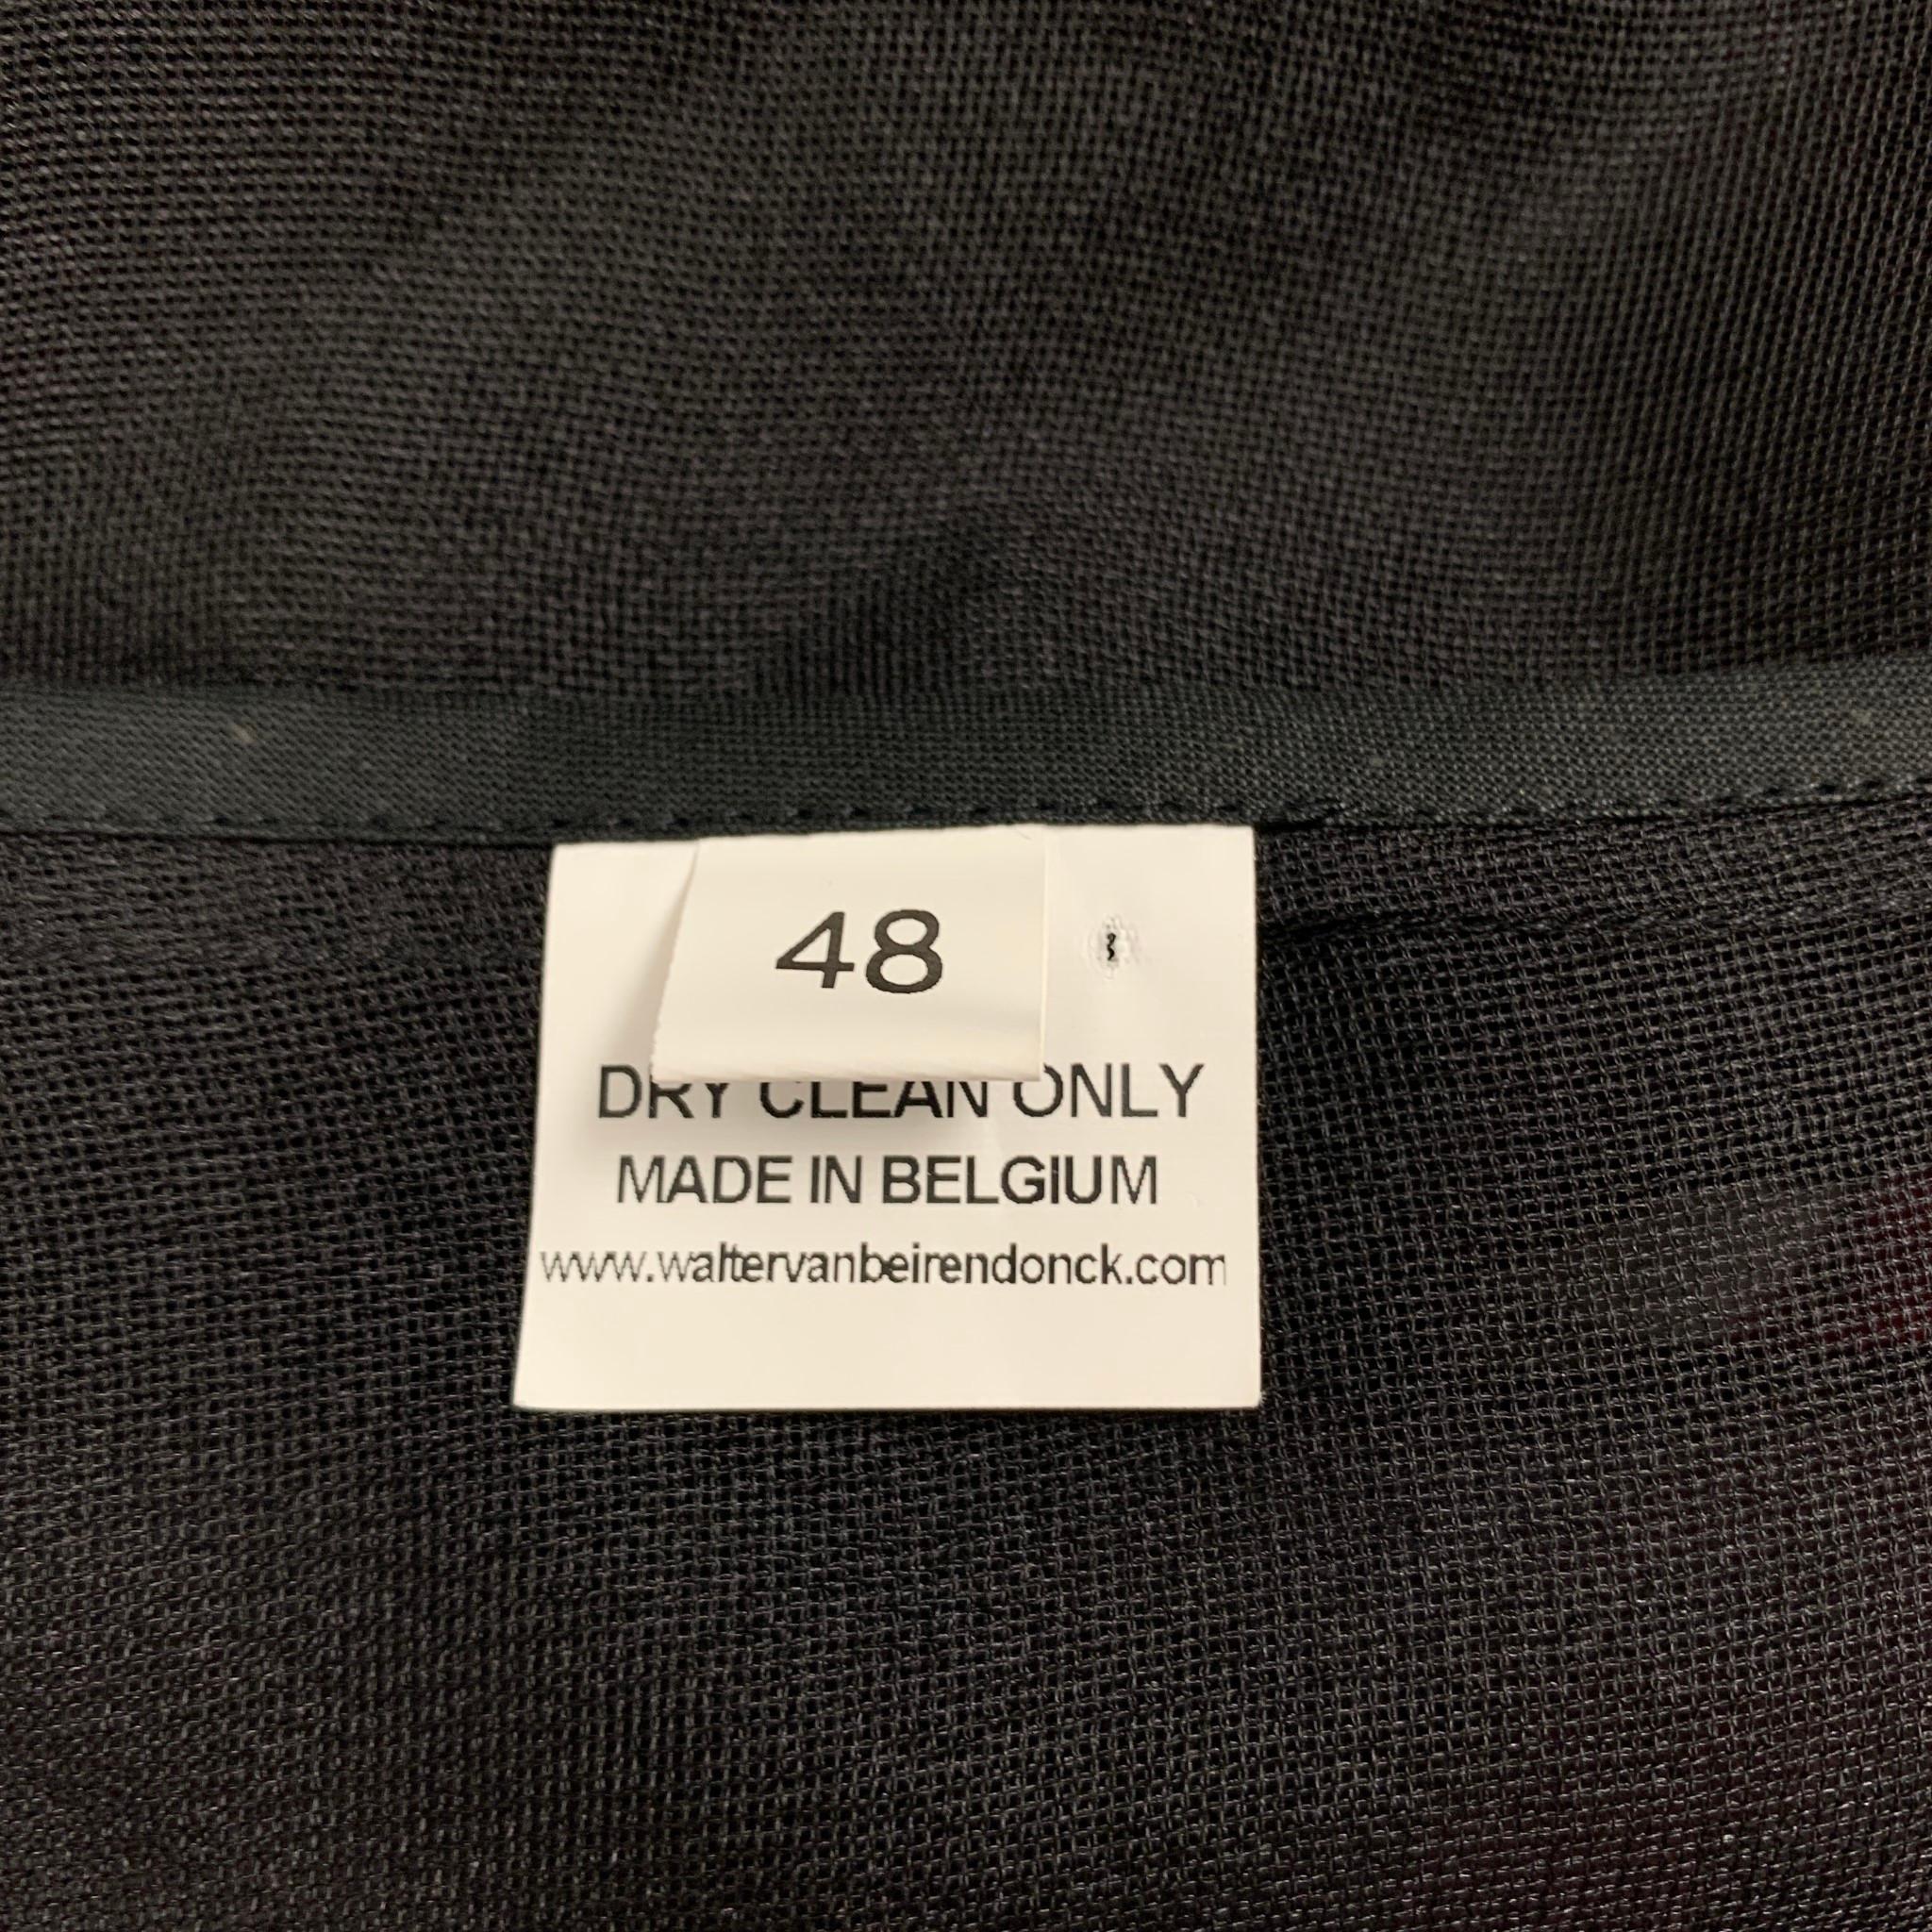 WALTER VAN BEIRENDONCK SS 16 Size 38 Black Multi-Color Silk Jacket 1